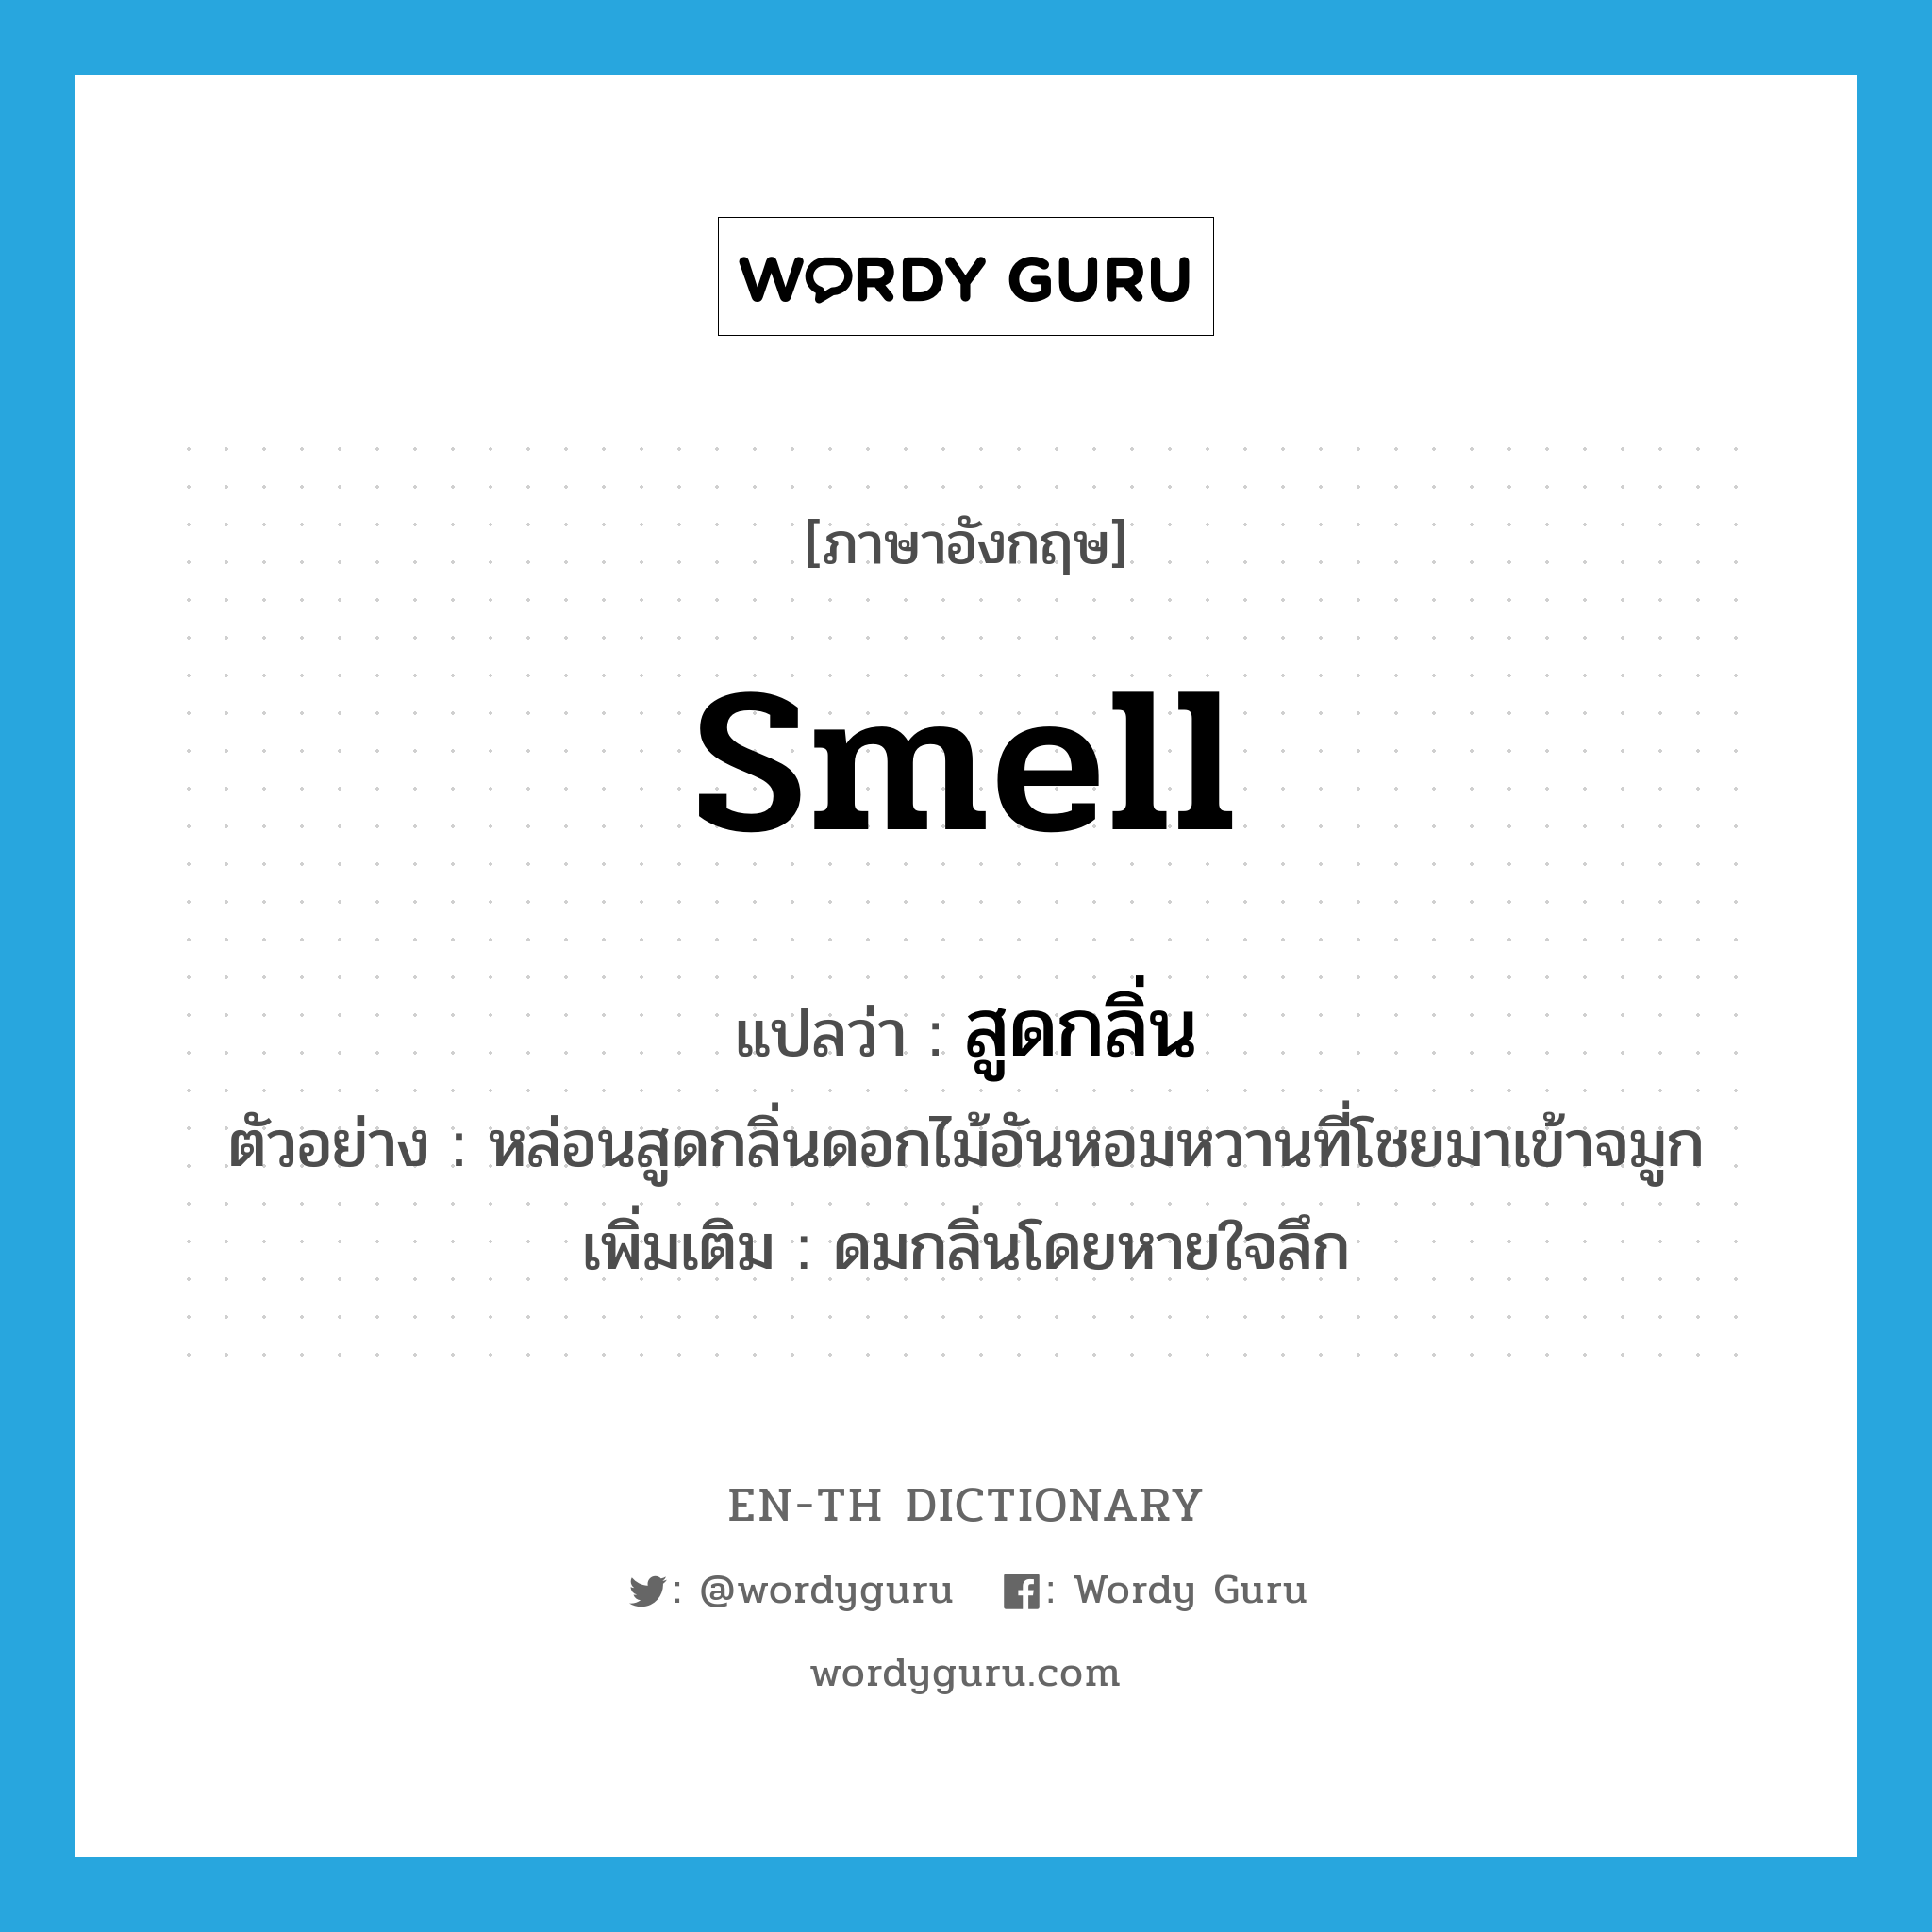 สูดกลิ่น ภาษาอังกฤษ?, คำศัพท์ภาษาอังกฤษ สูดกลิ่น แปลว่า smell ประเภท V ตัวอย่าง หล่อนสูดกลิ่นดอกไม้อันหอมหวานที่โชยมาเข้าจมูก เพิ่มเติม ดมกลิ่นโดยหายใจลึก หมวด V